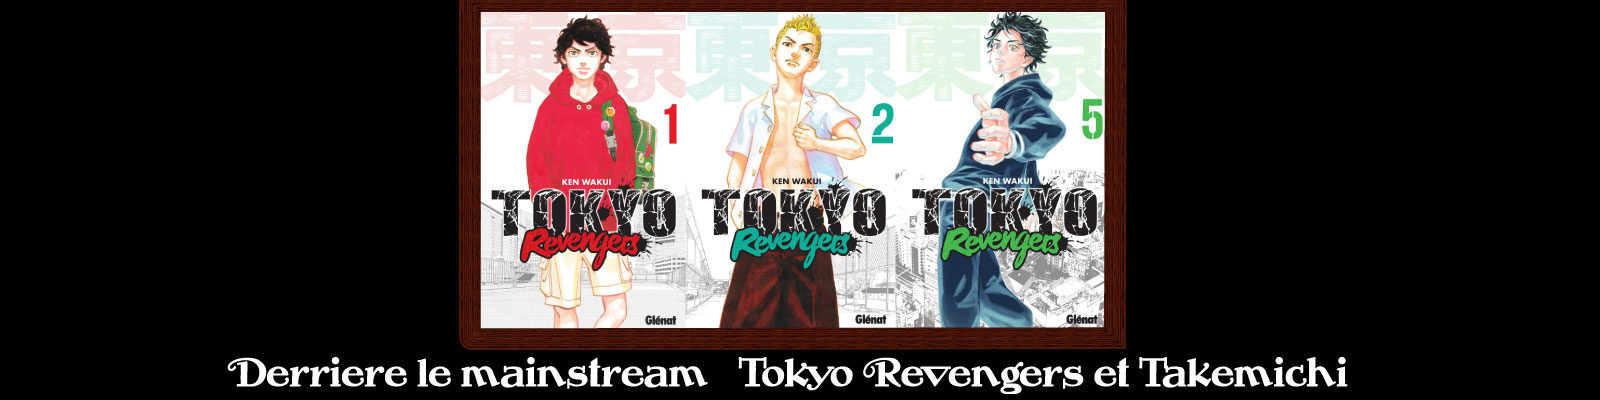 Tokyo Revengers - Takemichi